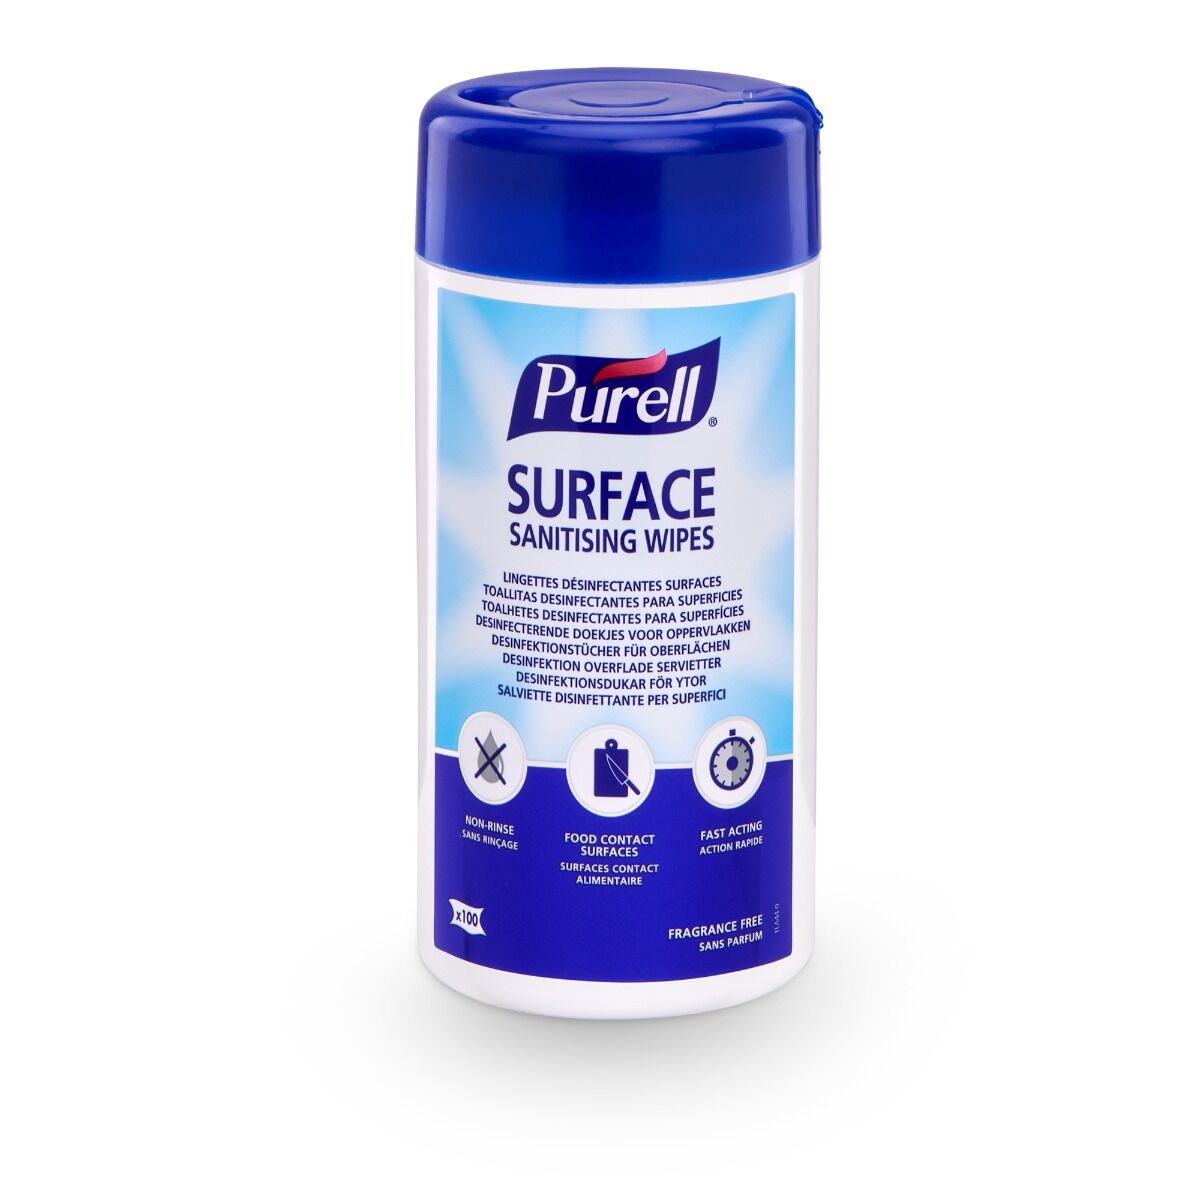 Featured image for “PURELL SURFACE Desinfektionstücher”